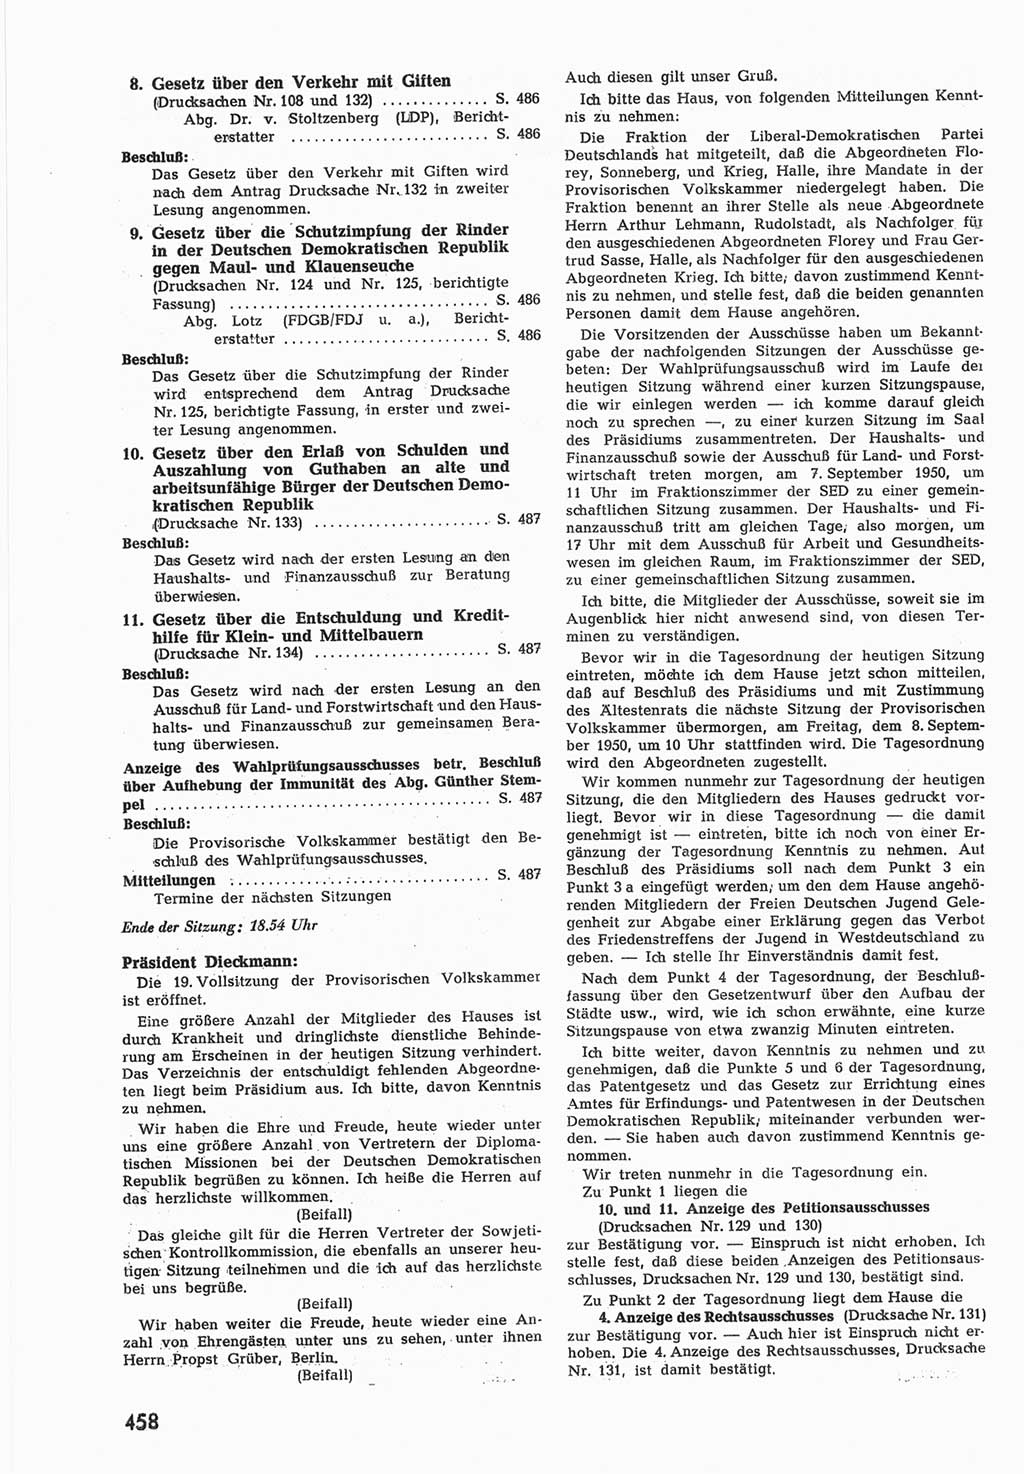 Provisorische Volkskammer (VK) der Deutschen Demokratischen Republik (DDR) 1949-1950, Dokument 476 (Prov. VK DDR 1949-1950, Dok. 476)